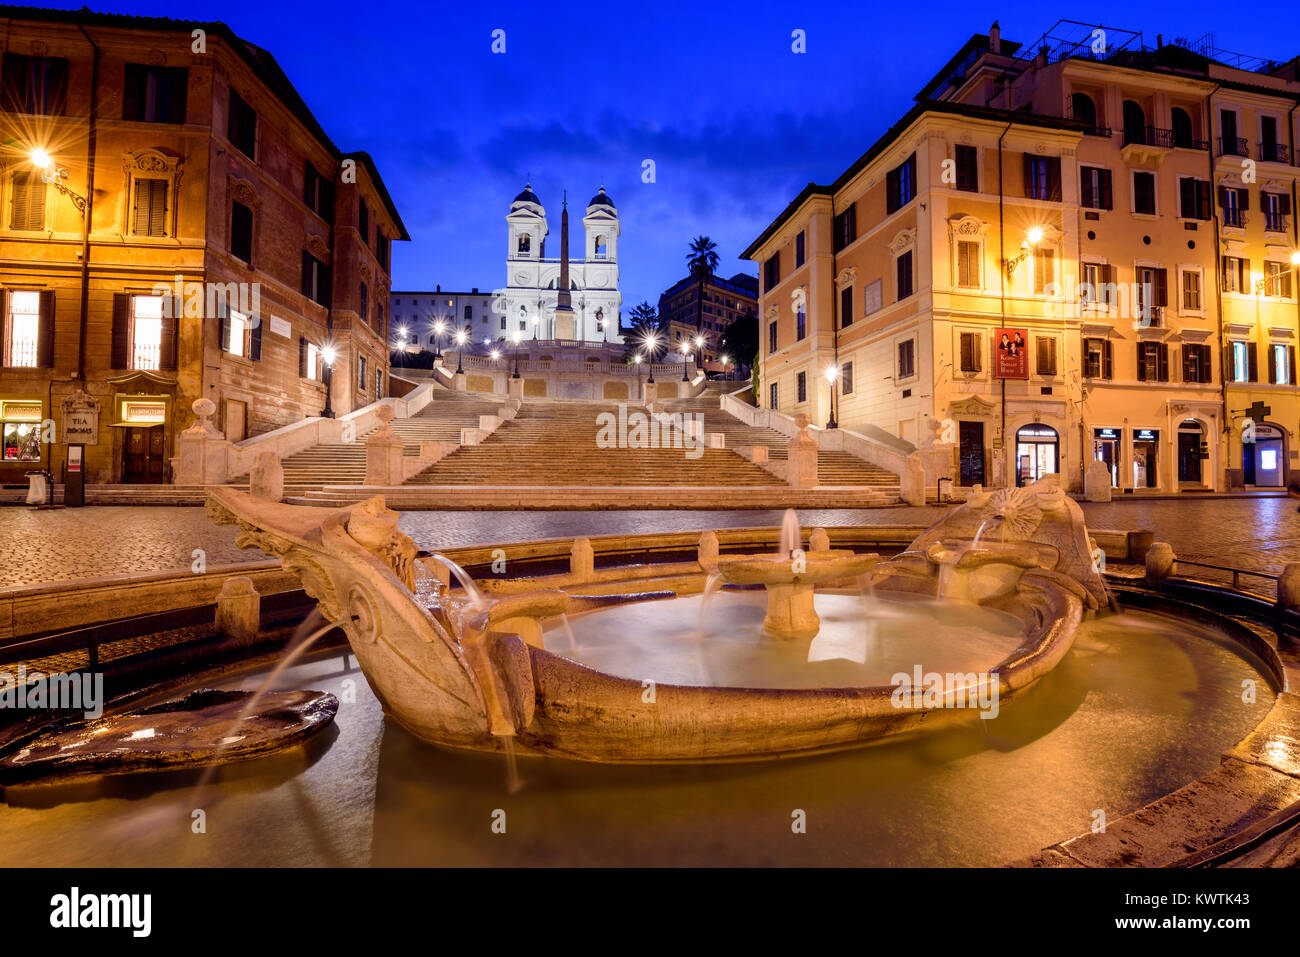 Fontana della Barcaccia and Spanish Steps at night, Piazza di Spagna, Rome, Lazio, Italy Stock Photo